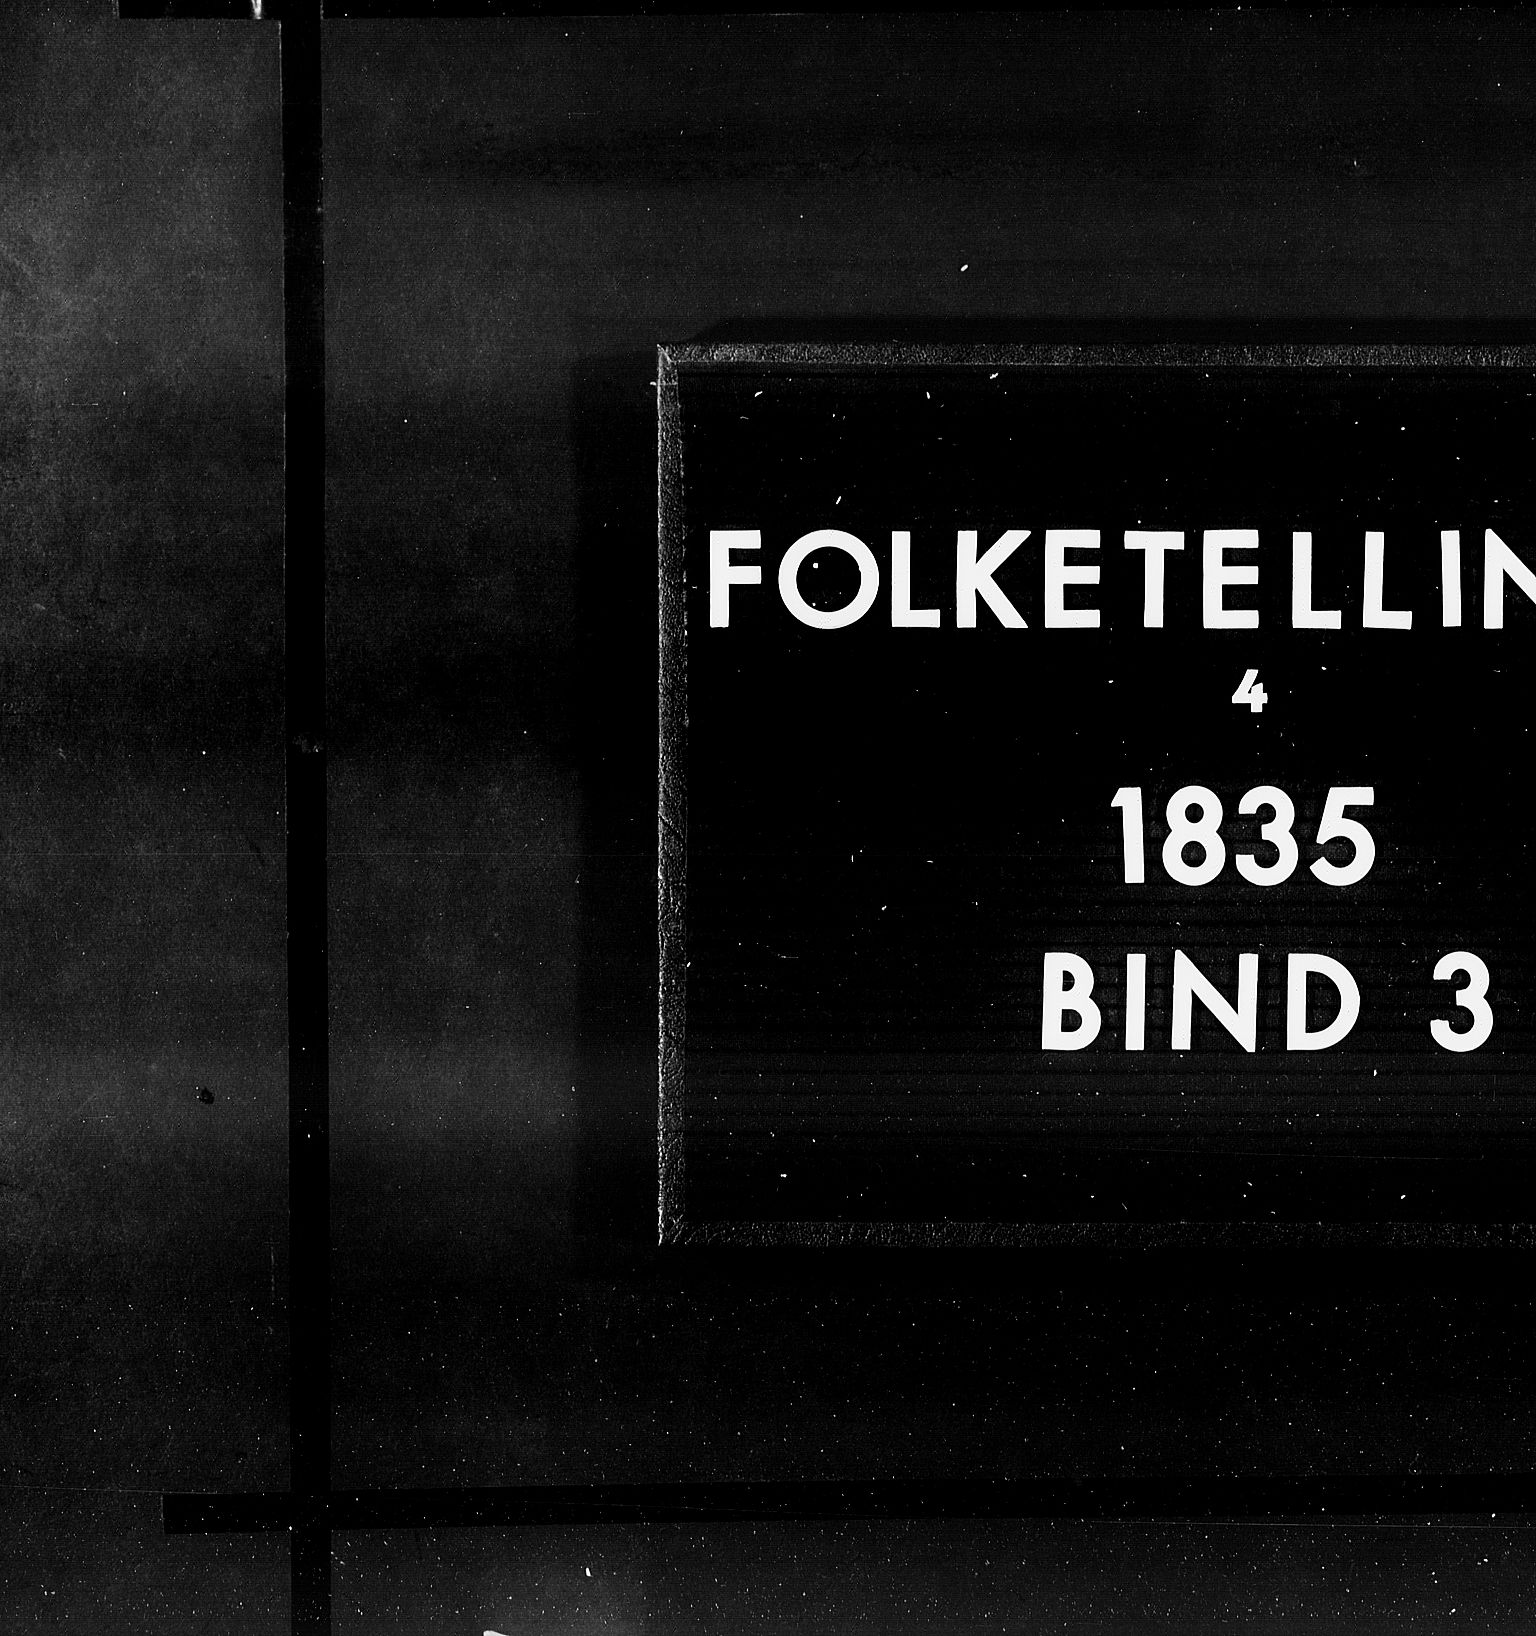 RA, Folketellingen 1835, bind 3: Hedemarken amt og Kristians amt, 1835